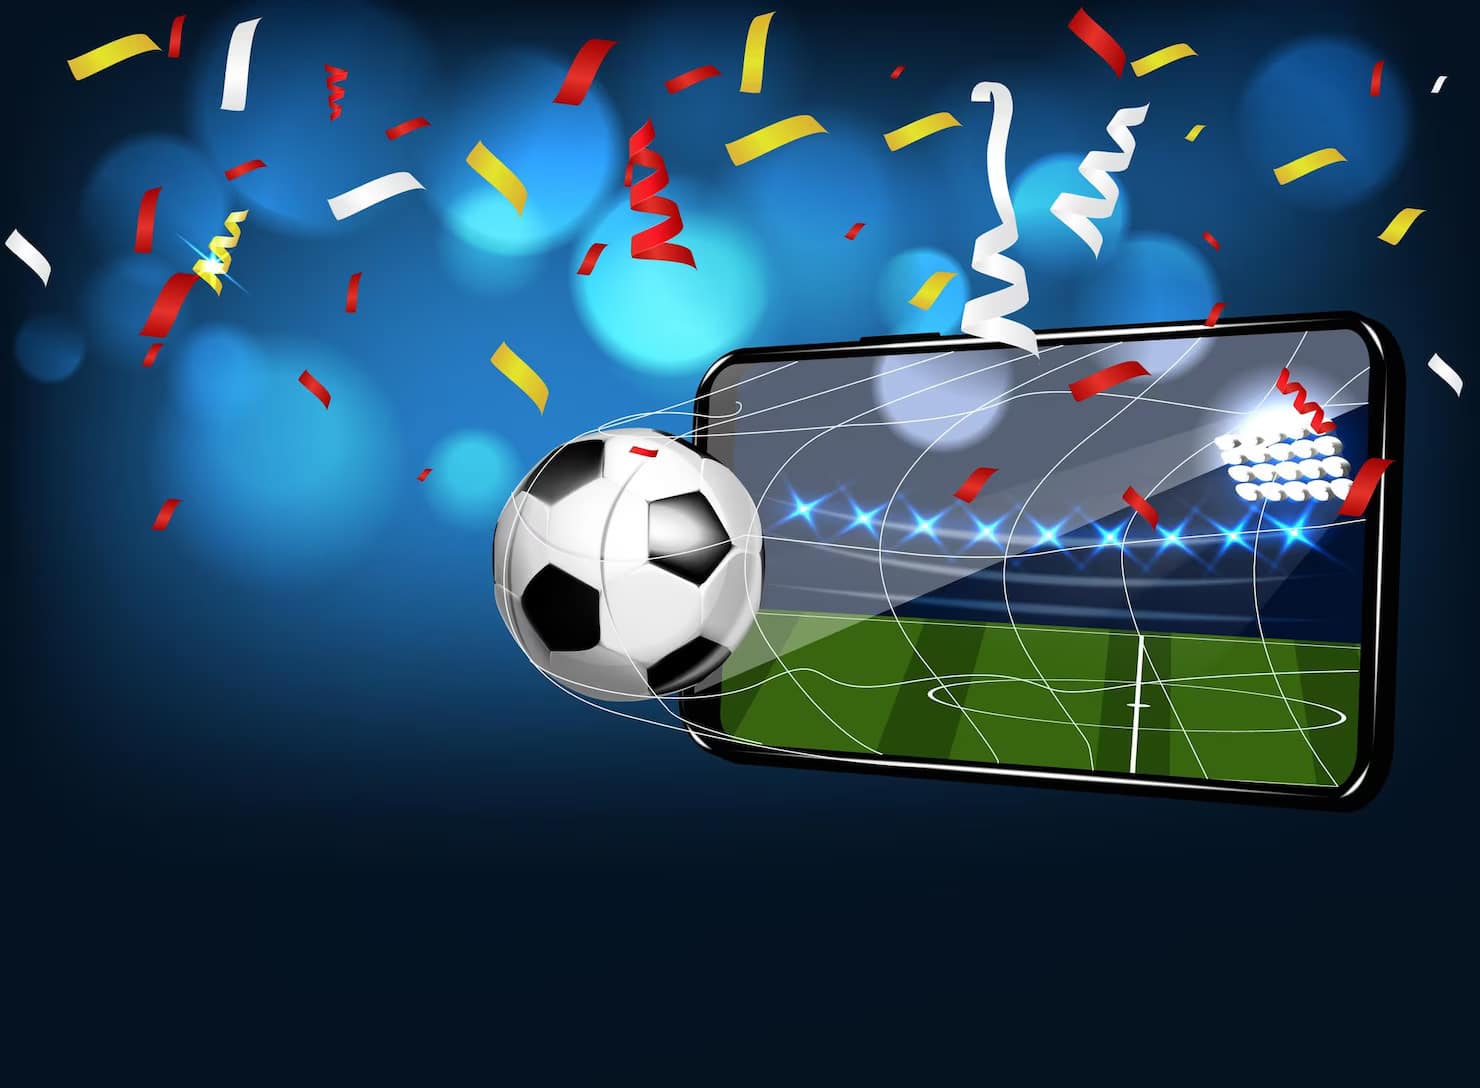 تطبيقات لمشاهدة كرة القدم مجانًا: أفضل 5 تطبيقات!